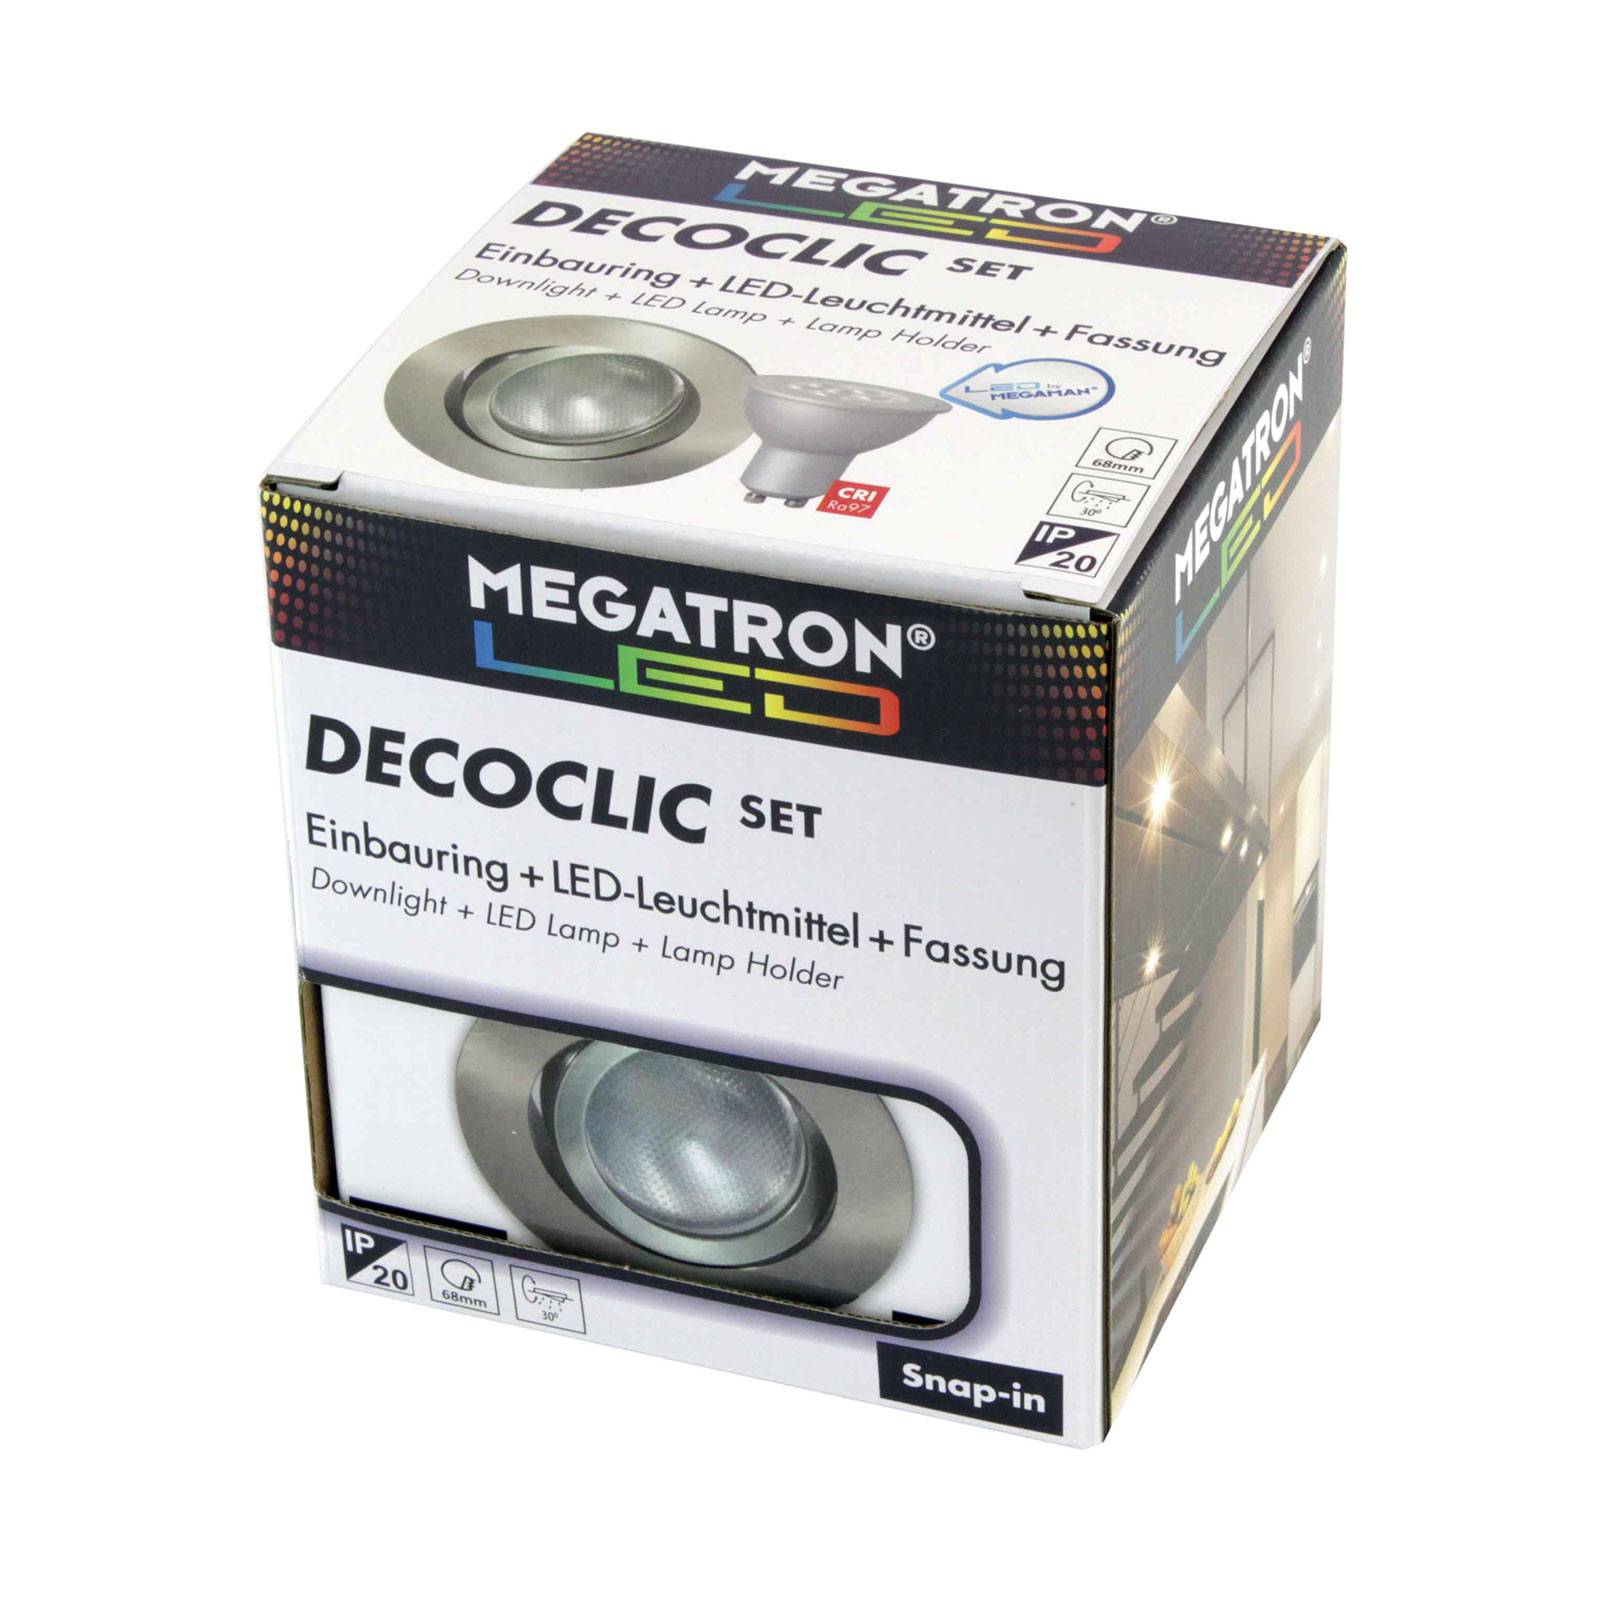 Megatron LED-Einbauspot Decoclic Set mit GU10 6 W, eisen